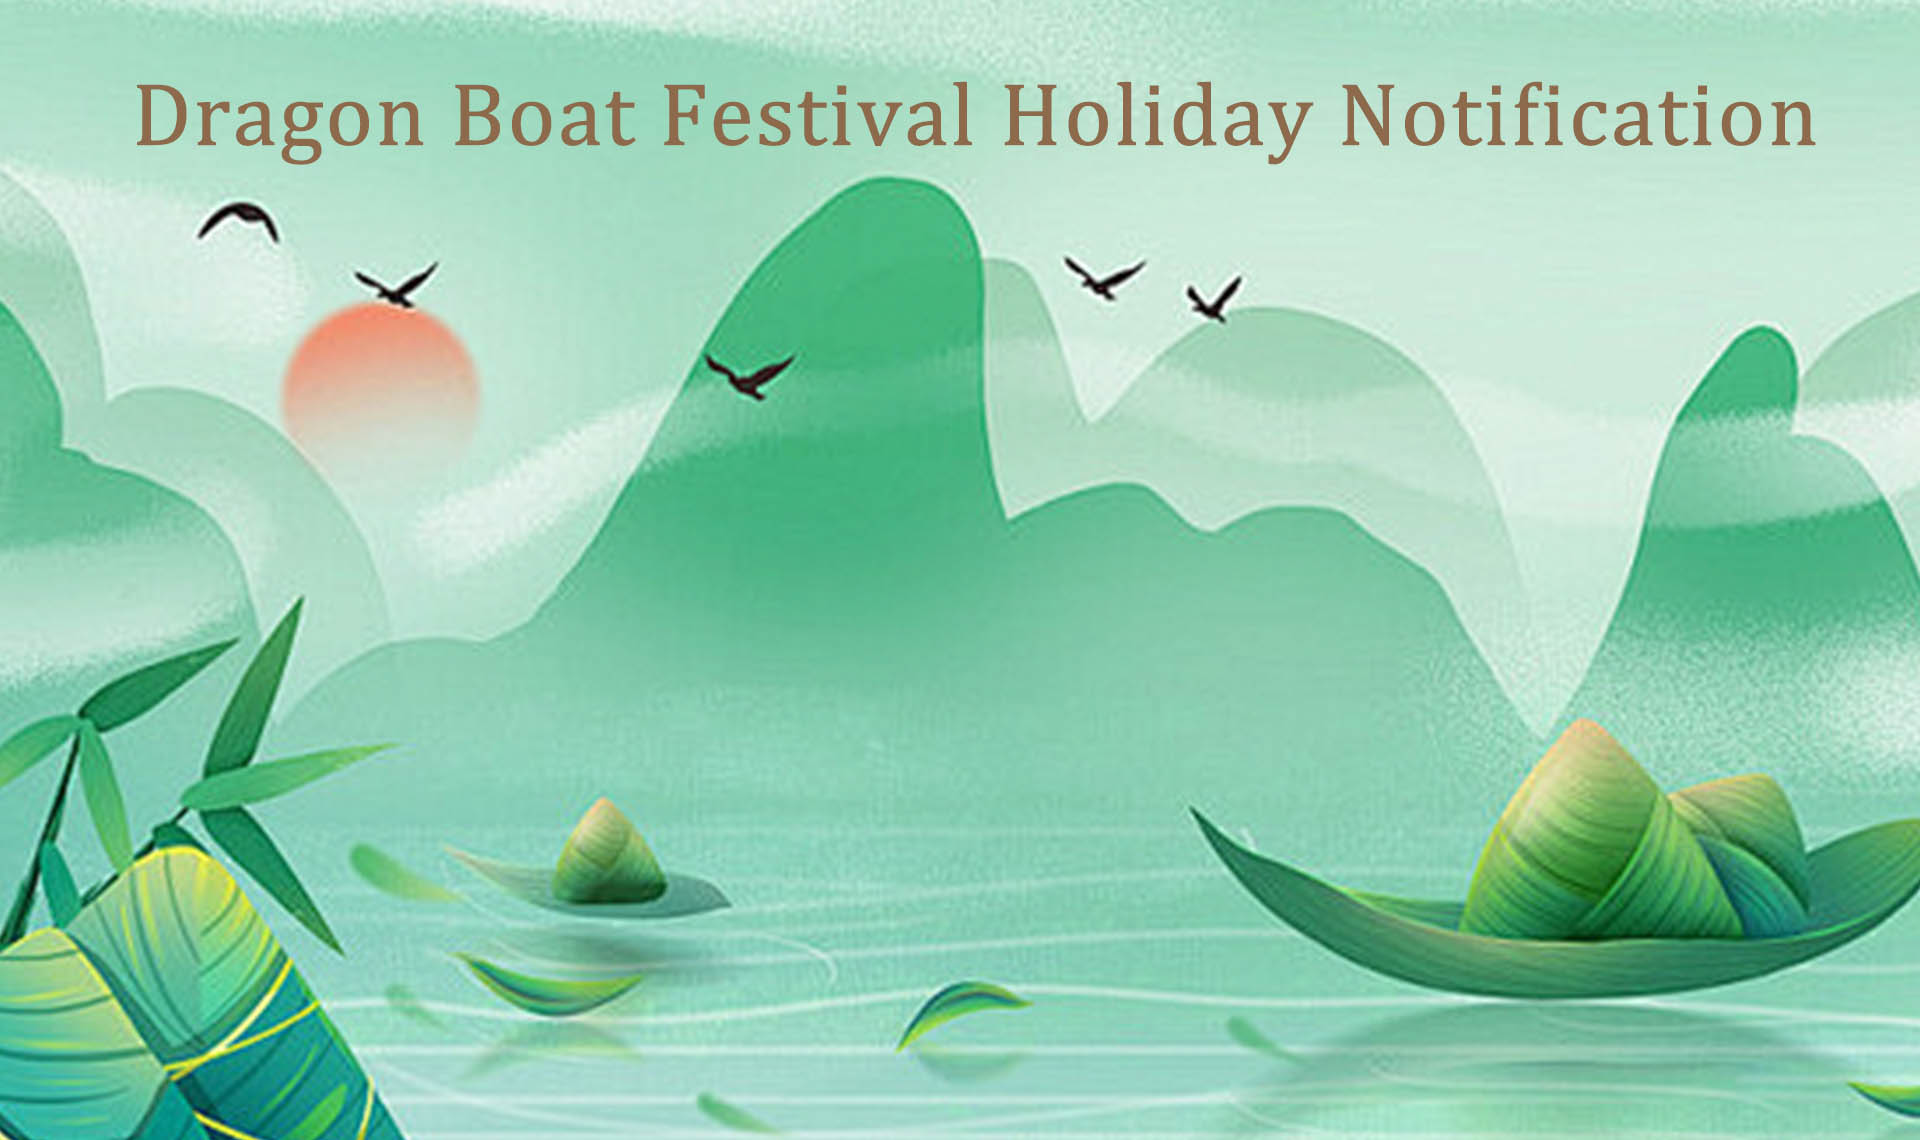 Notification de vacances pour le festival des bateaux-dragons